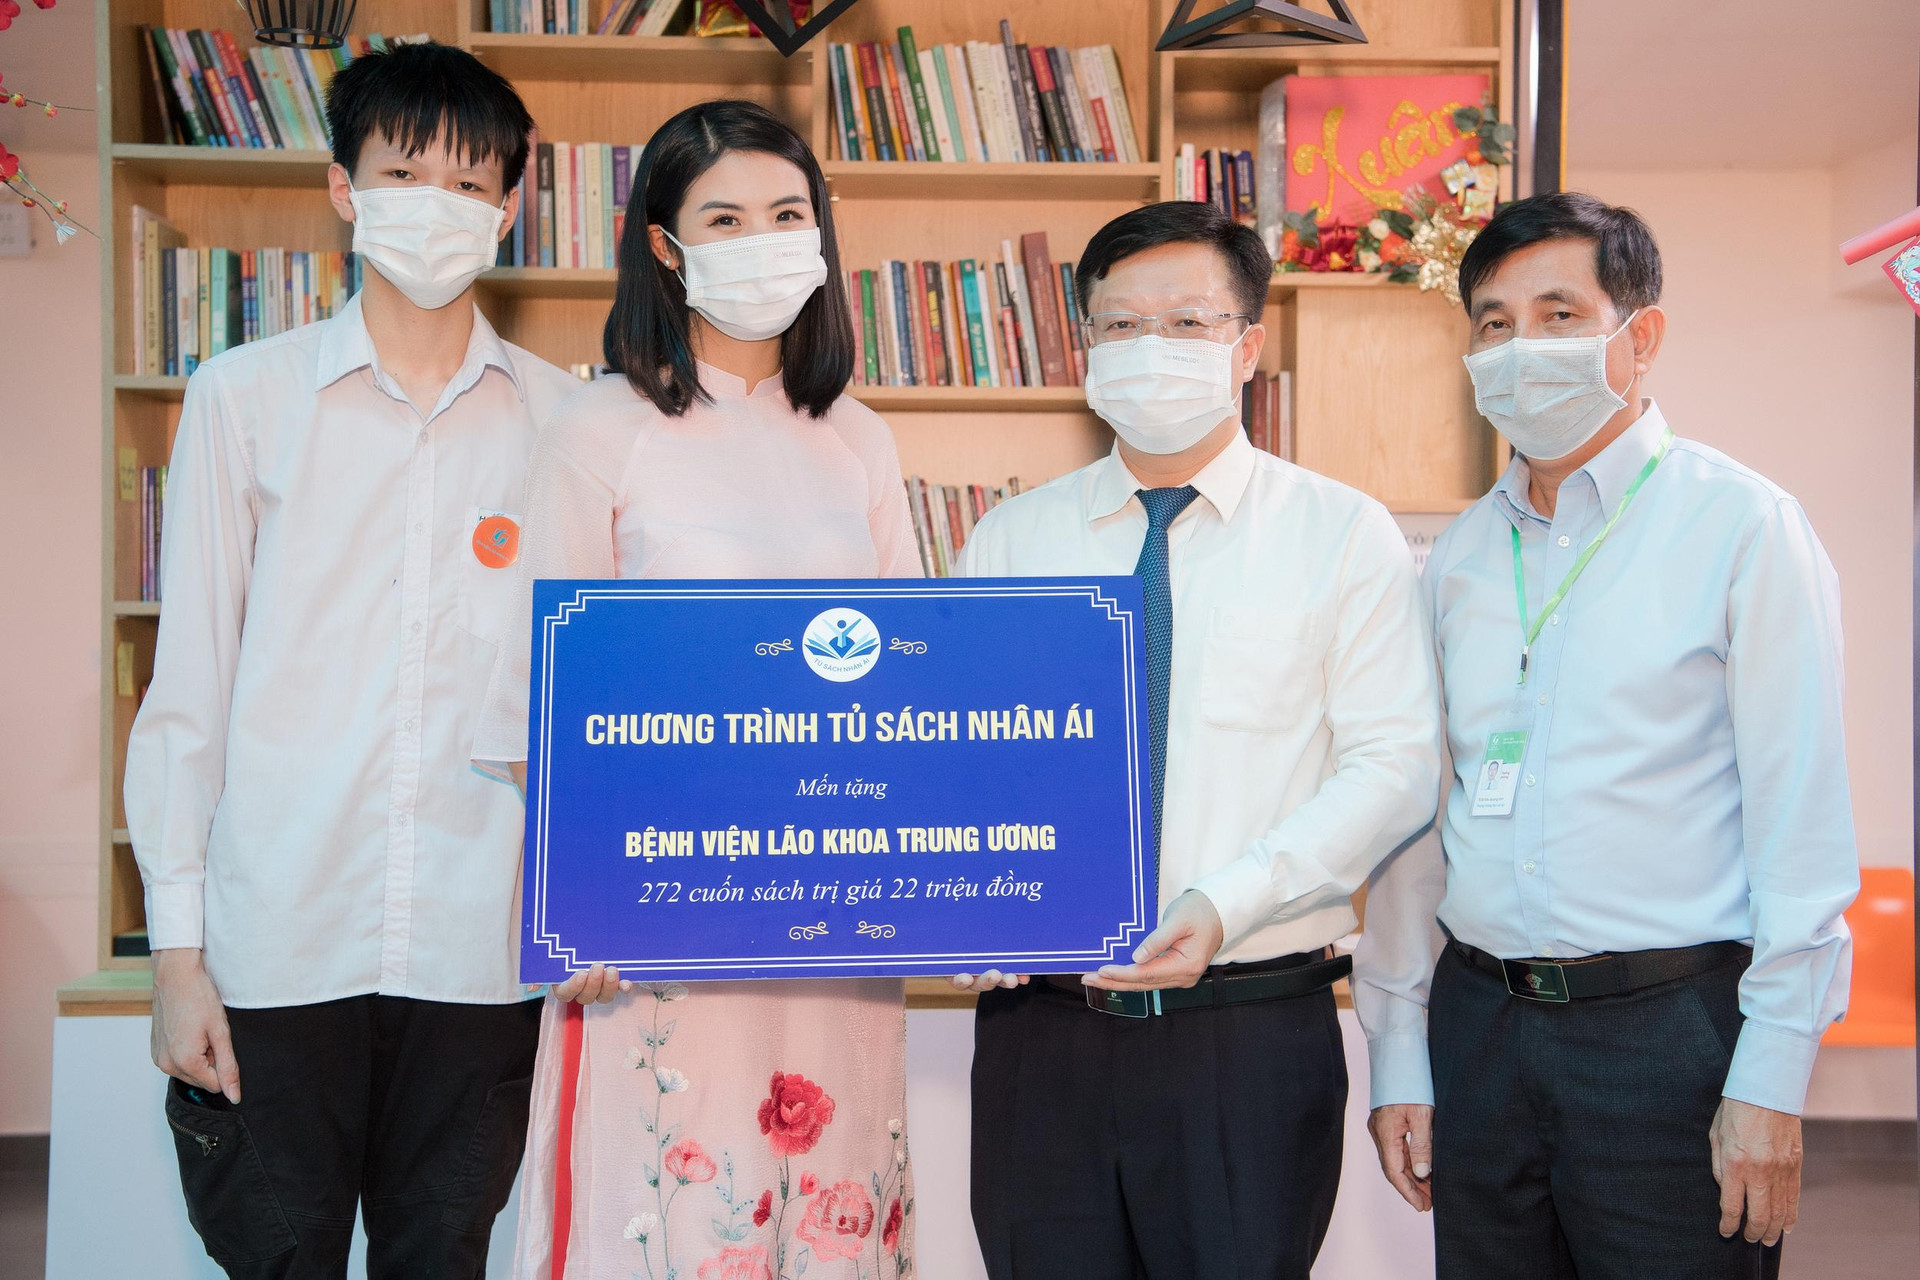 Hoa hậu Ngọc Hân cùng Tủ sách Nhân ái trao tặng sách cho bệnh viện lão khoa - Ảnh 1.